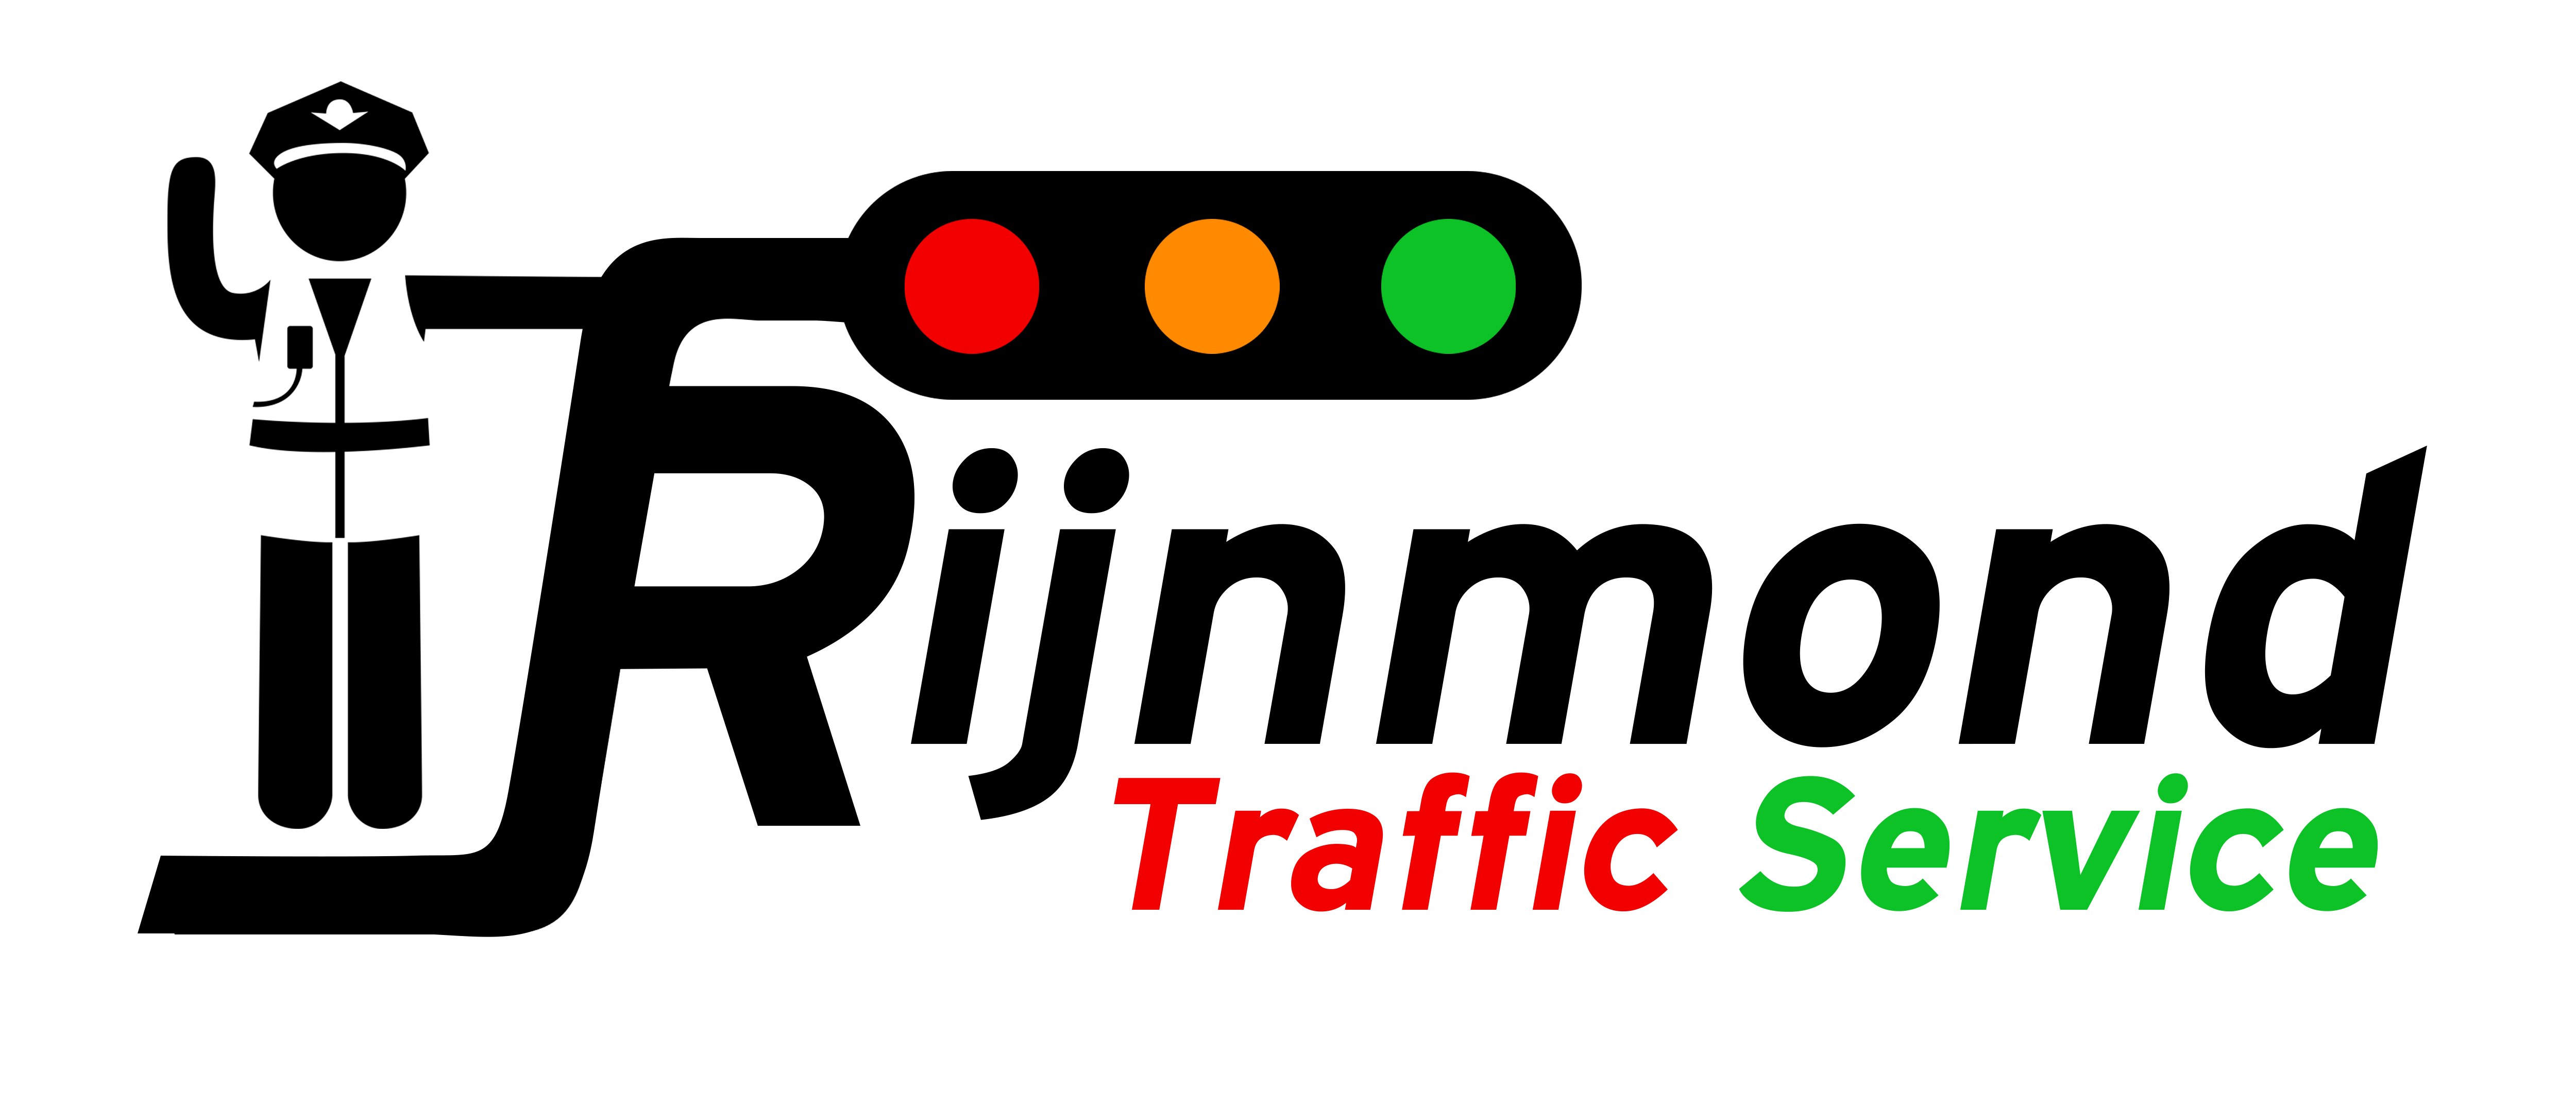 Rijnmond Traffic Service